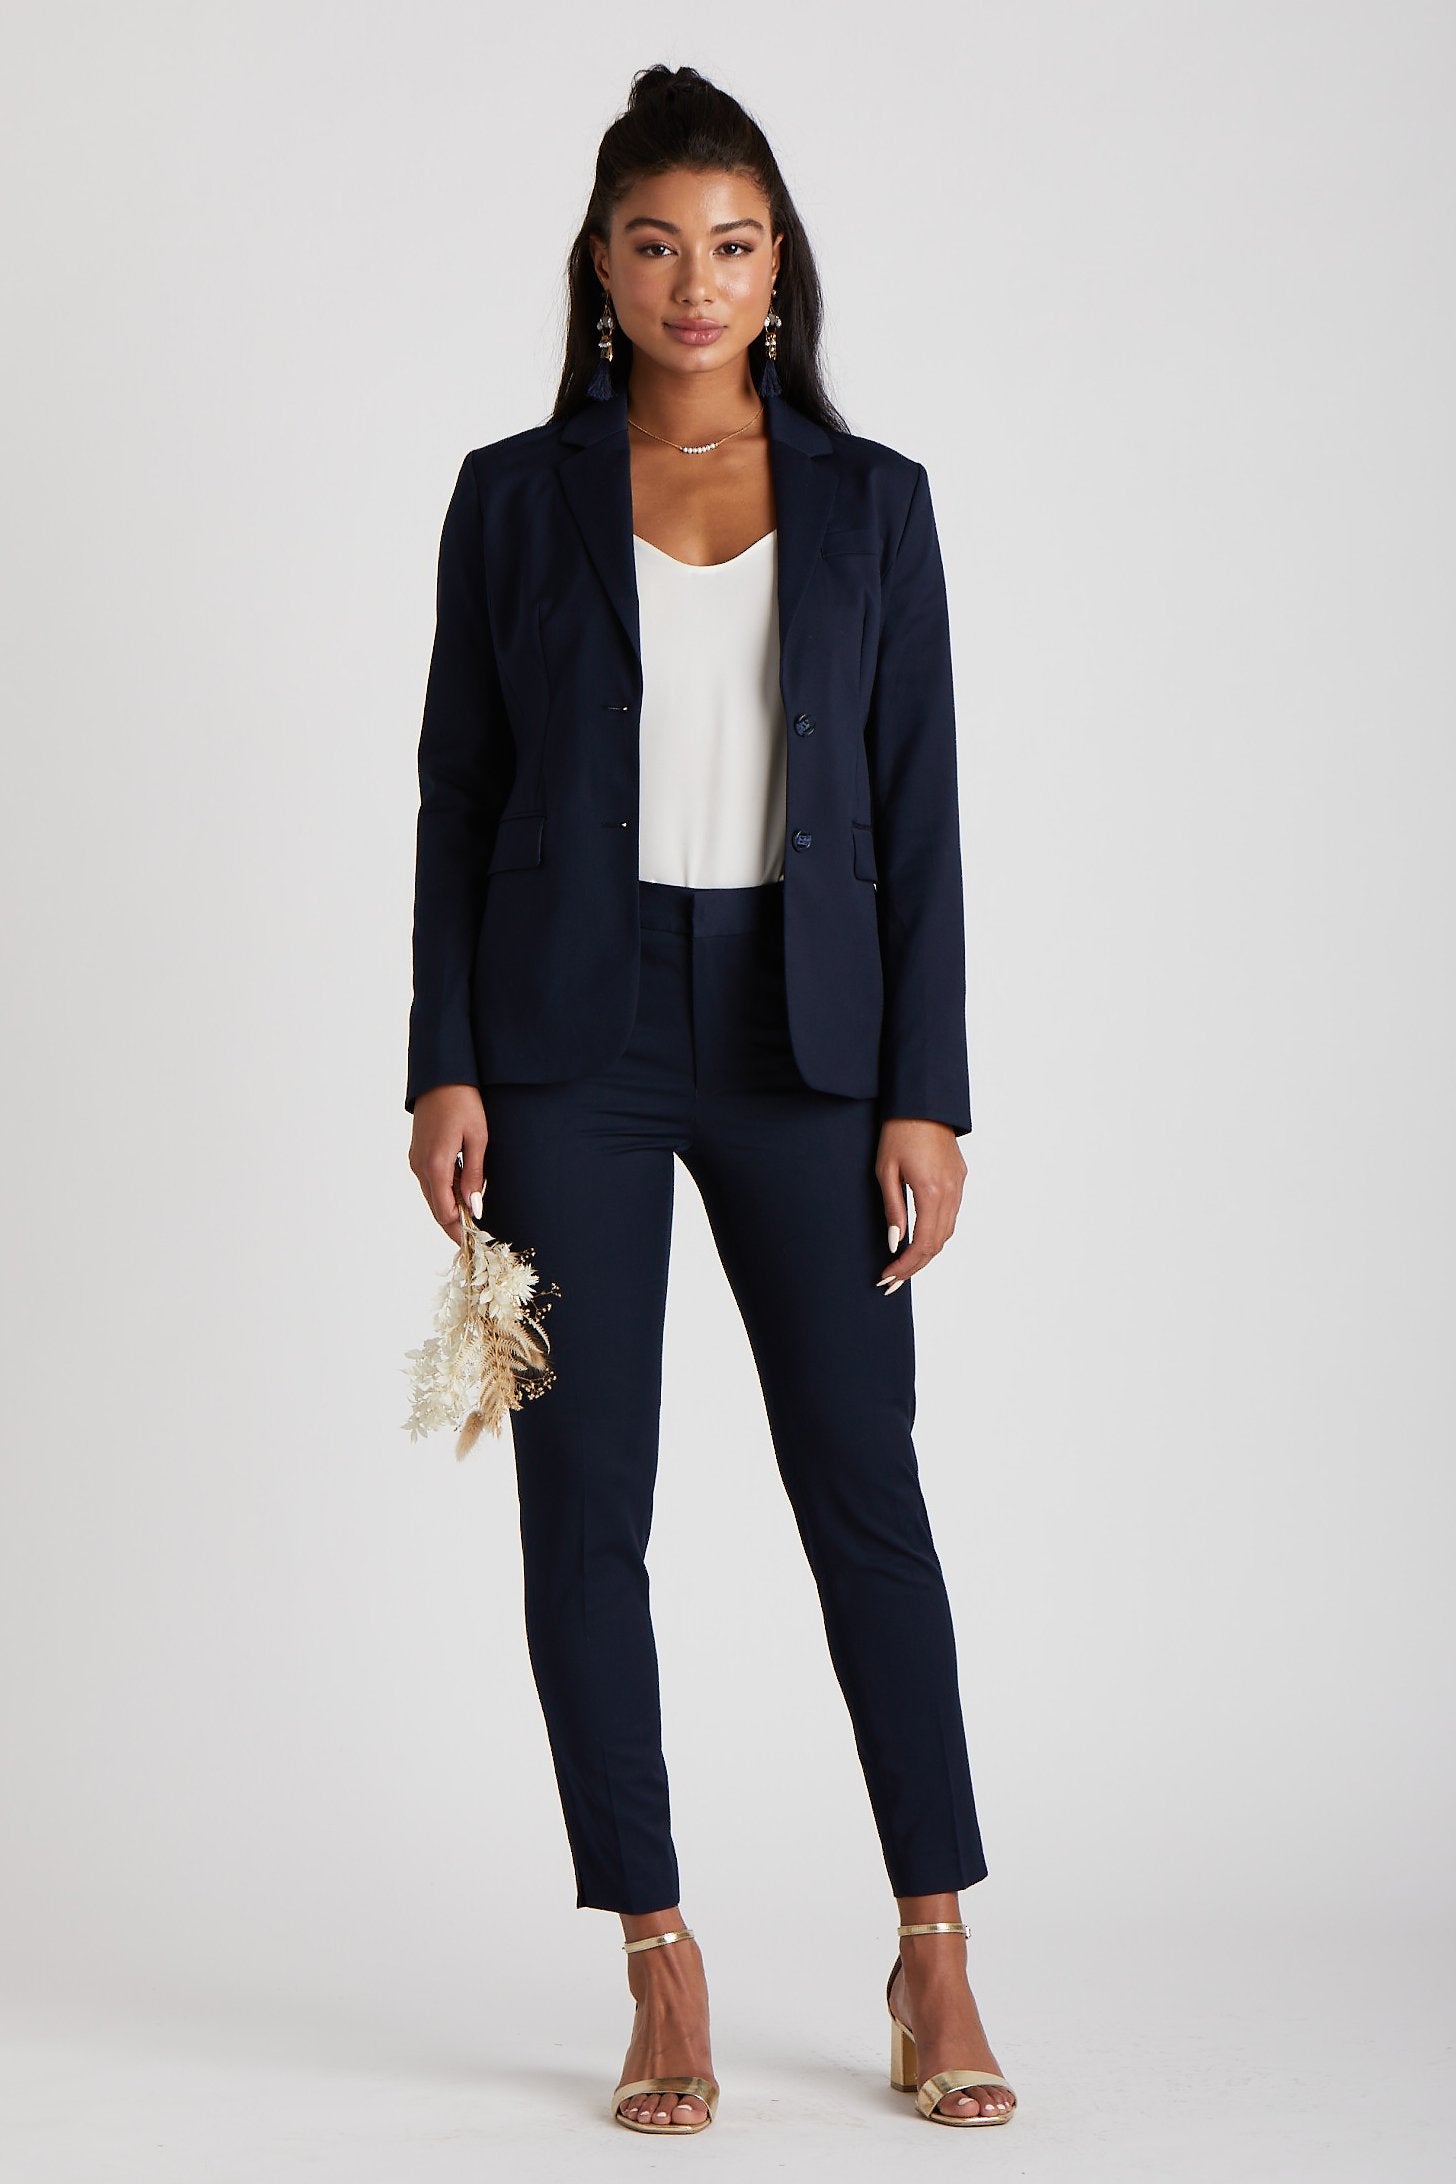 Women's Navy Blue Suit Jacket by SuitShop